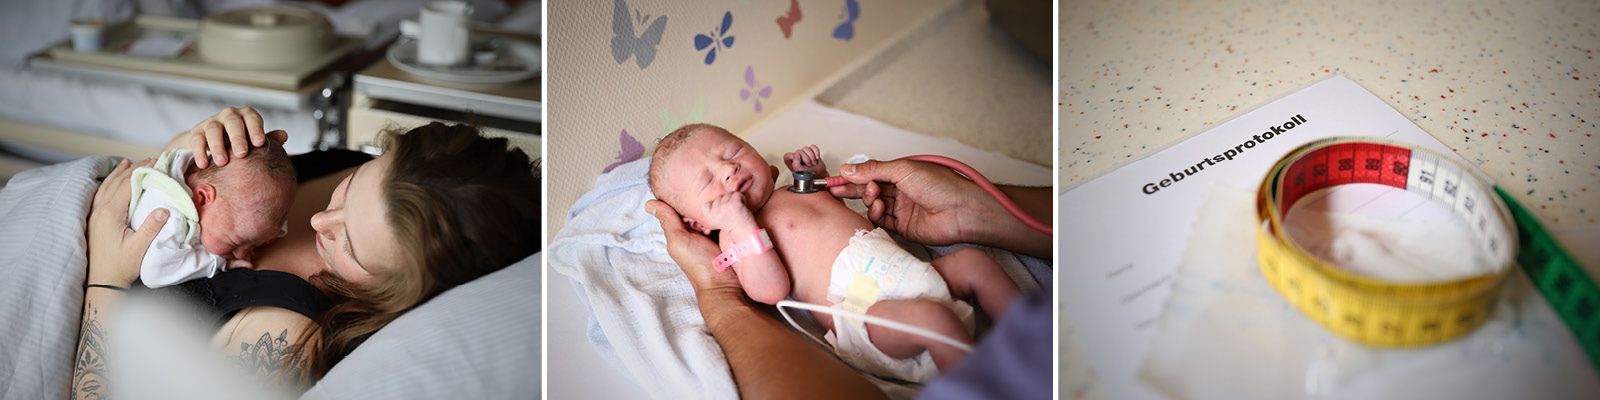 Eine Collage: Mutter und Kind, ein Baby, das untersucht wird und ein Geburtenprotokoll Slider_Geburtshilfe_5.jpg